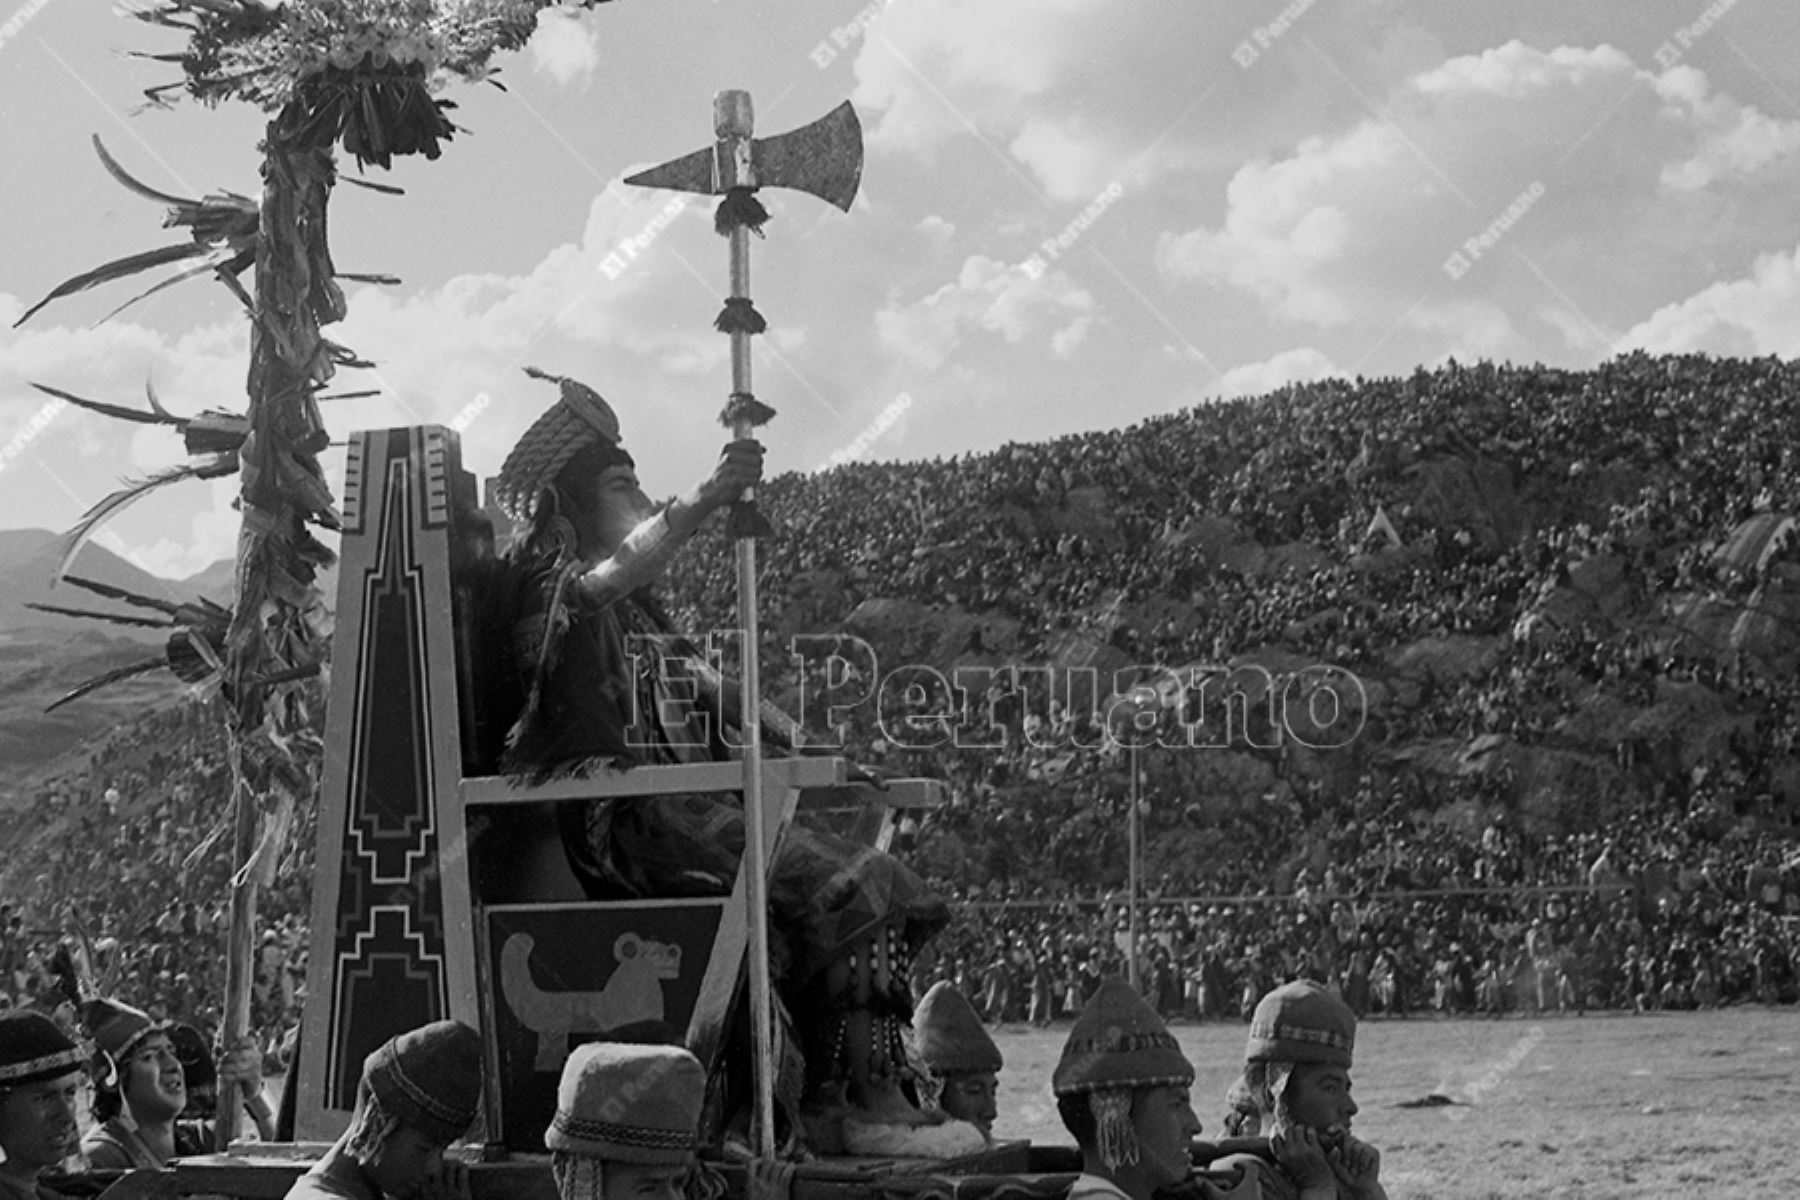 Lima - 24 junio 1975 / Celebración del Inti Raymi o Fiesta del Sol en la explanada de la fortaleza de Sacsayhuamán en la ciudad del Cusco. Foto: Archivo Histórico de El Peruano / Oswaldo Sánchez